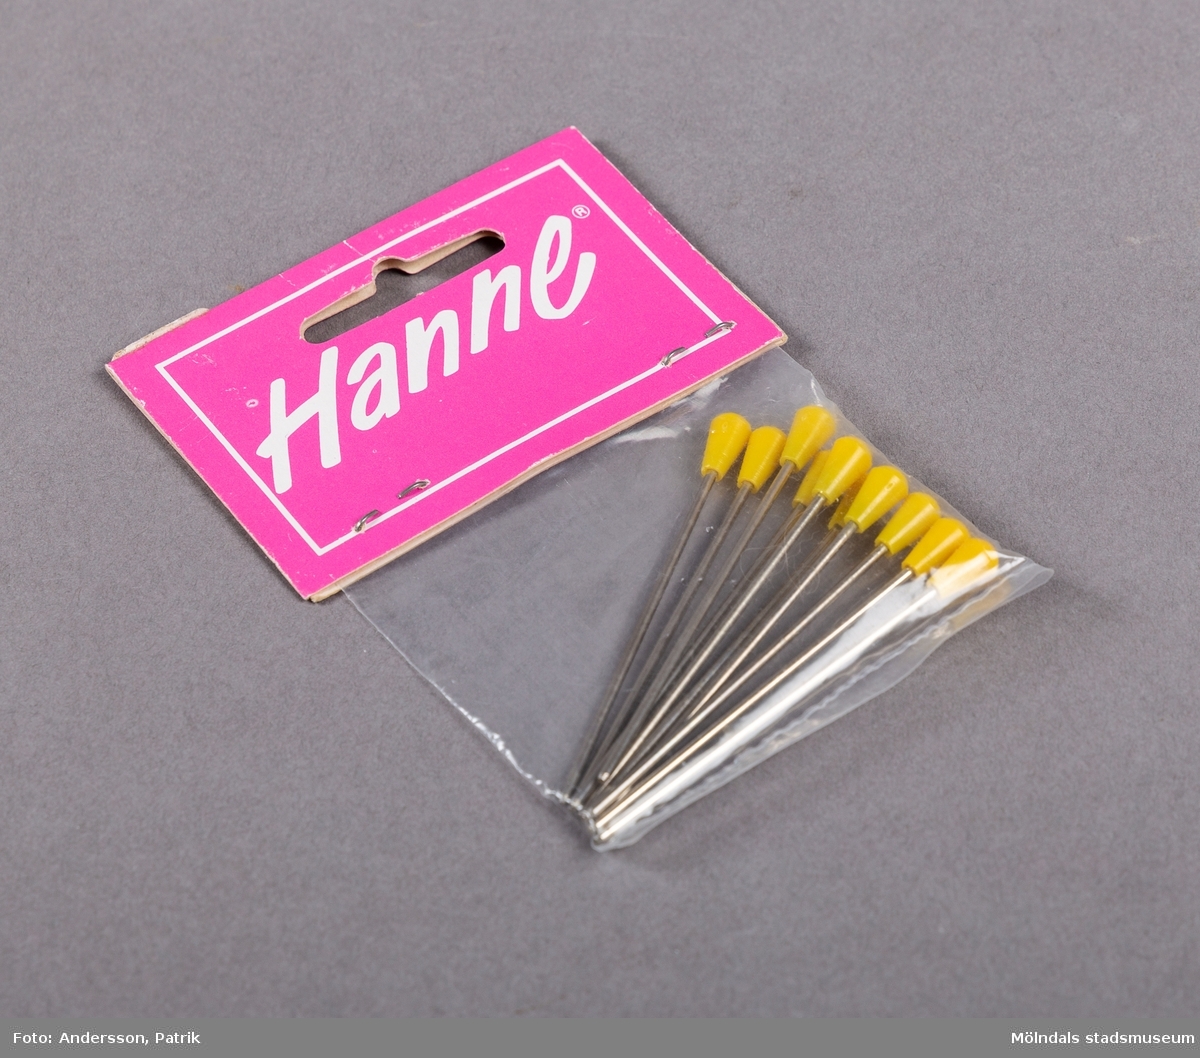 En mindre plastpåse innehållande nålar med gul ände av plast. Etiketten som är rosa, innehåller företagets namn skrivet i vit text, inom en vit ram.
Etiketten är fasthäftad på påsen med två häftstift.